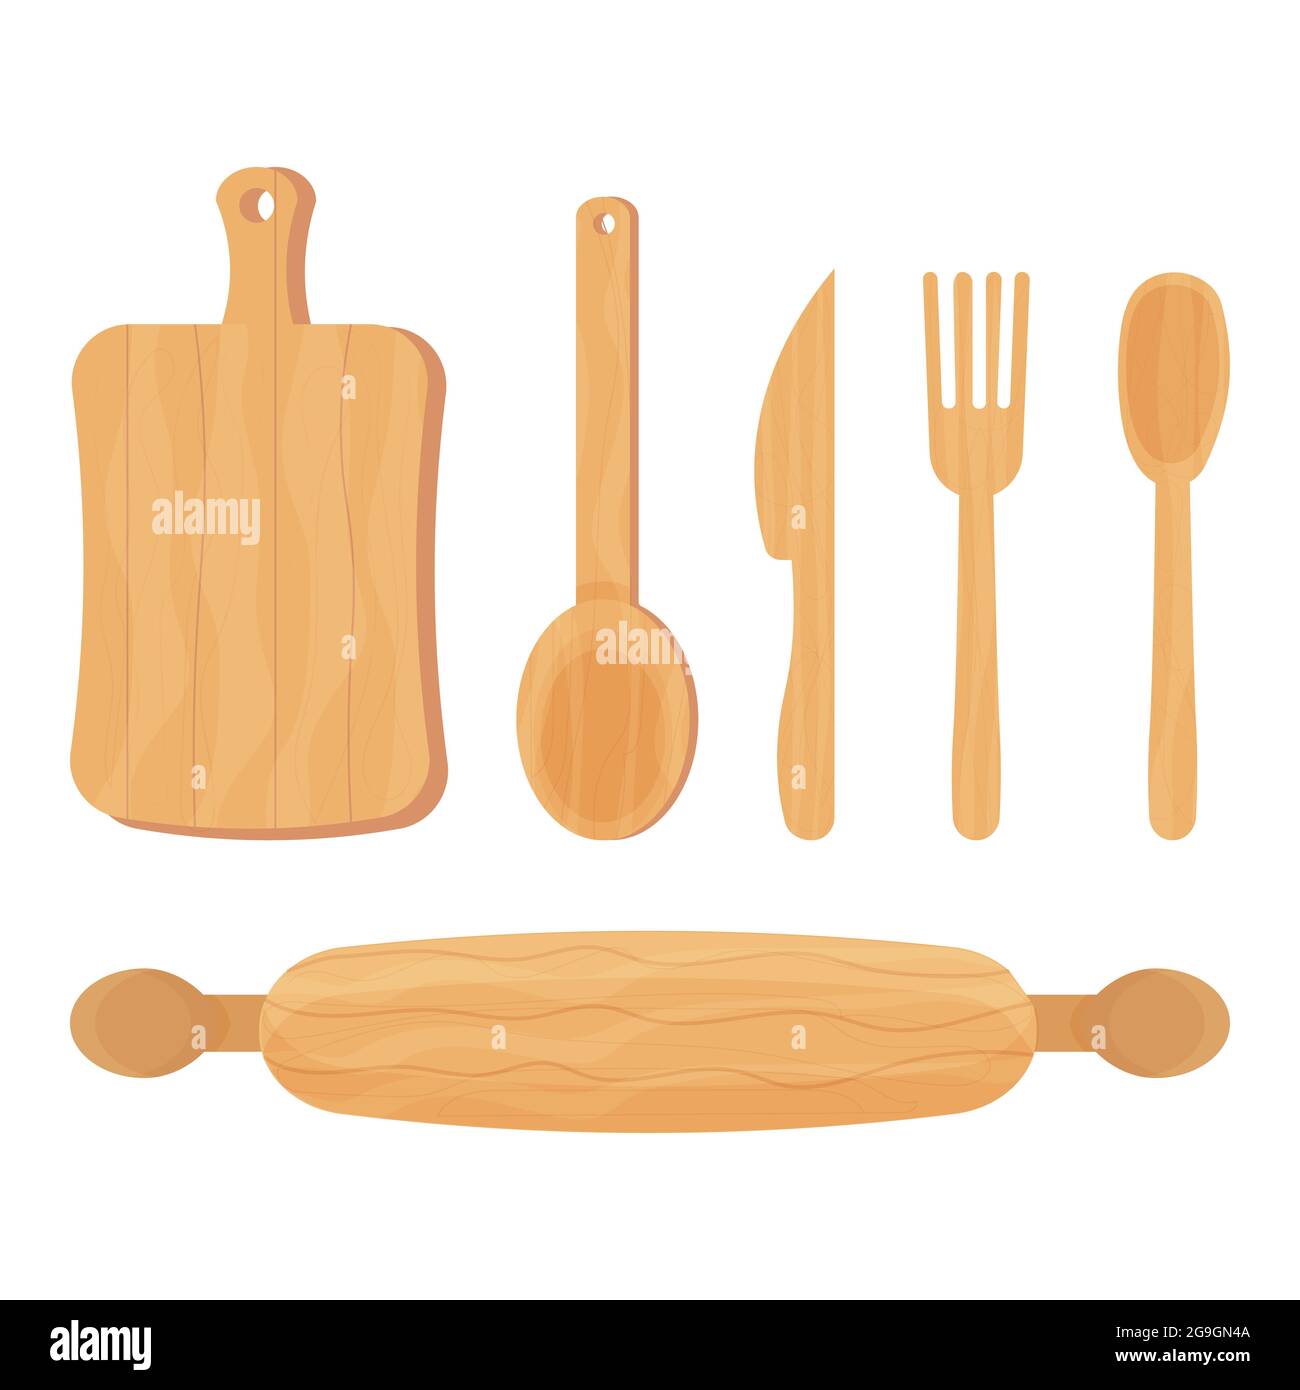 Set di utensili da cucina in legno da cucina cucchiaio, coltello, forchetta, perno di rotolamento isolato su sfondo bianco. Materiale ecologico, riutilizzabile. Illustrazione vettoriale Illustrazione Vettoriale